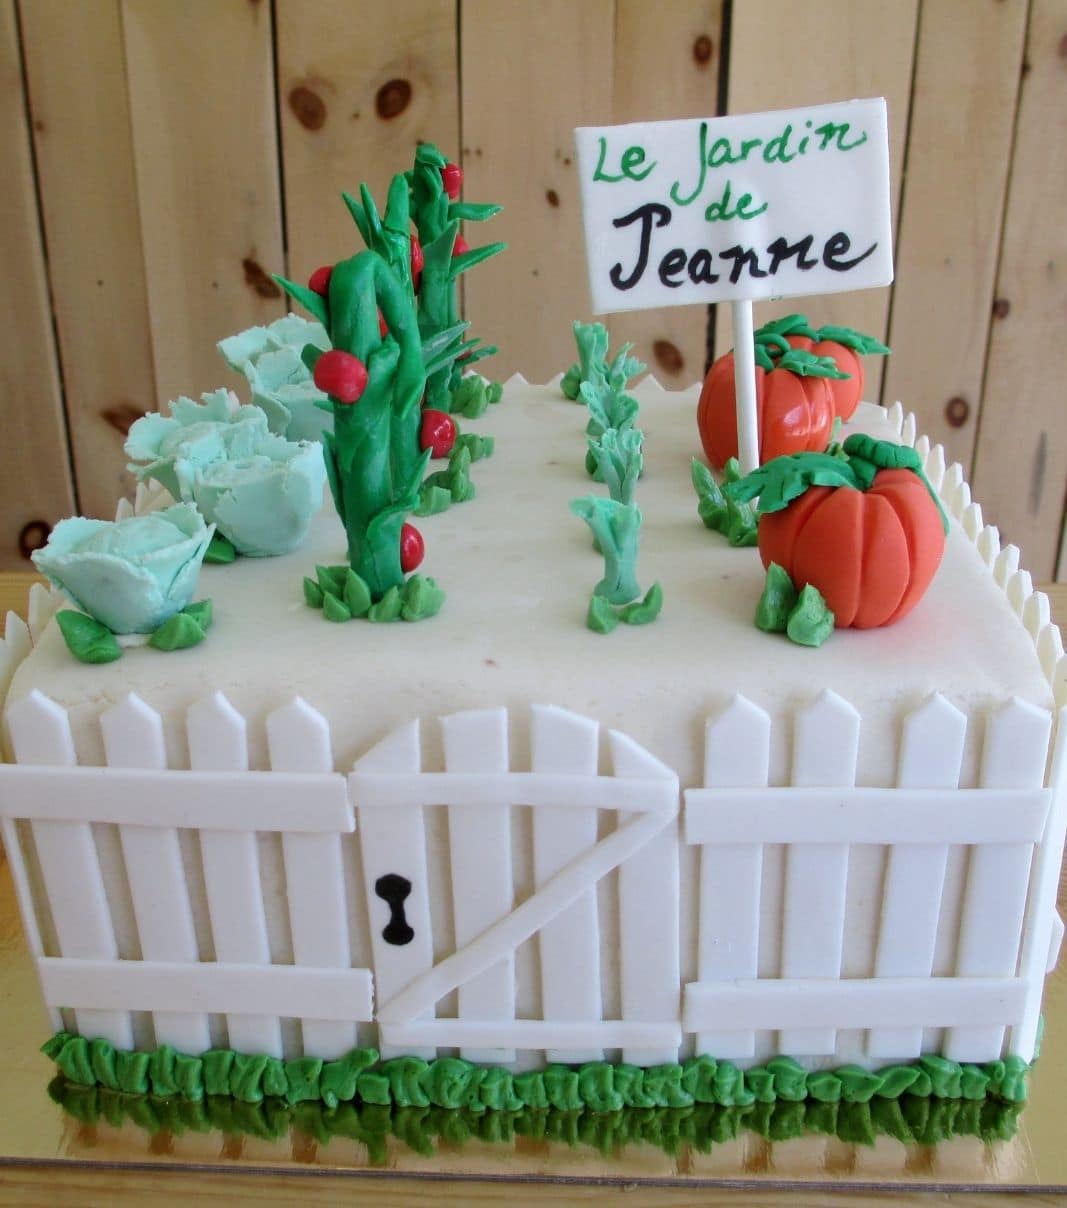 Gâteau d'anniversaire sur mesure de Jeanne: gâteau en forme de potager en 3D avec une couverture en pâte d'amande et décoré d'une clôture et de légumes de jardin (citrouilles, tomates, carottes, choux) en fondant.